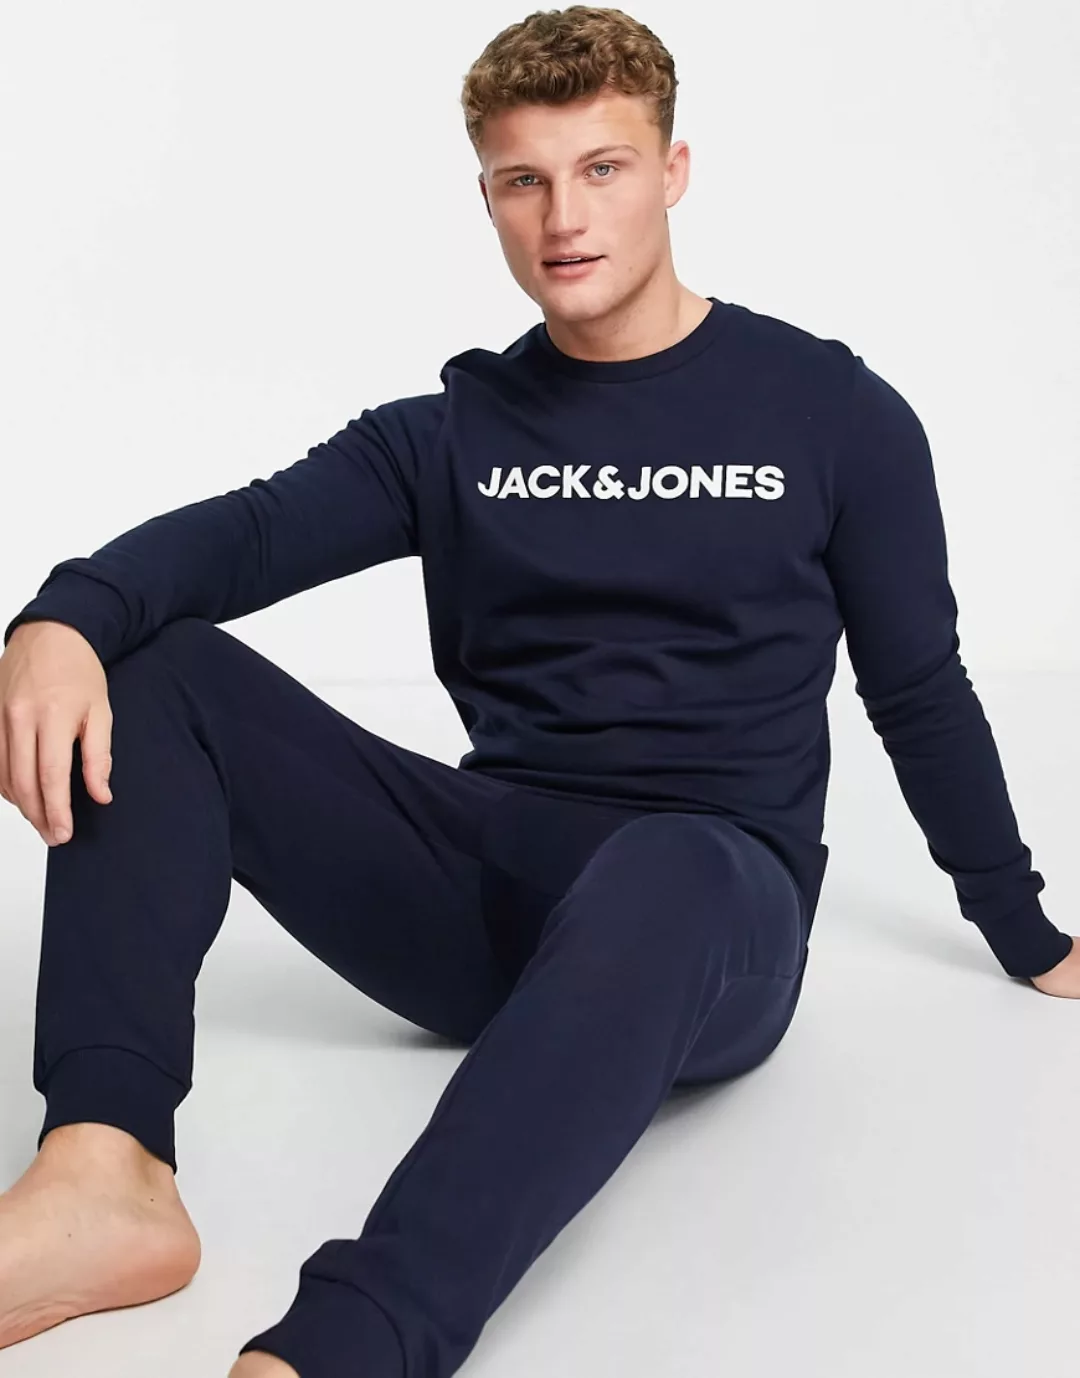 Jack & Jones Lounge Schlafanzug 2XL Navy Blazer / Detail Navy Blazer günstig online kaufen